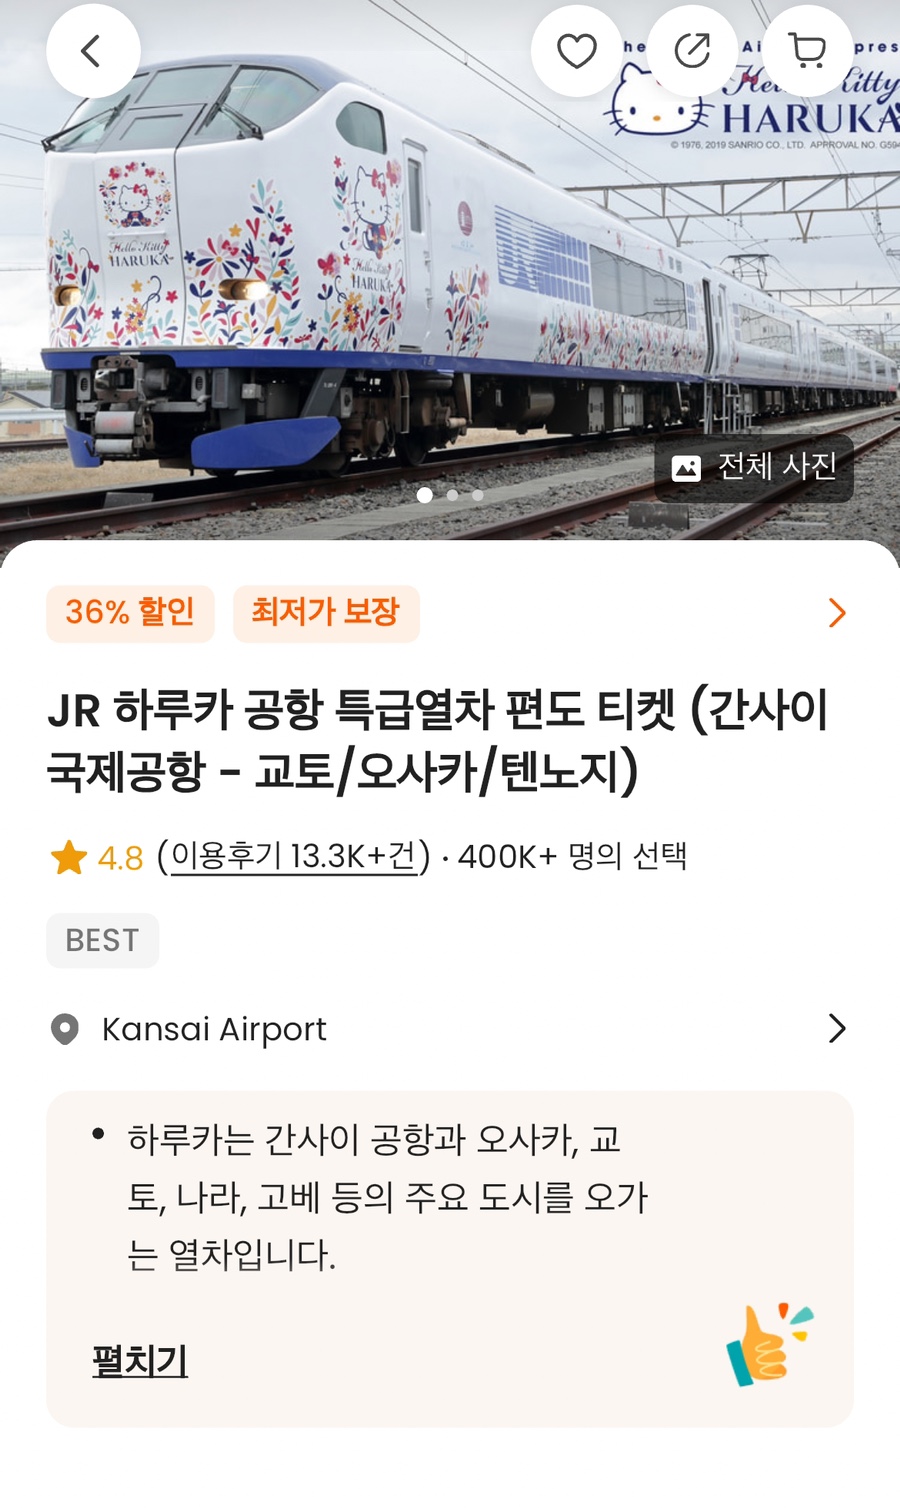 간사이공항에서 교토 오사카 가는법 하루카 열차 가격 할인 예약 티켓교환 시간표